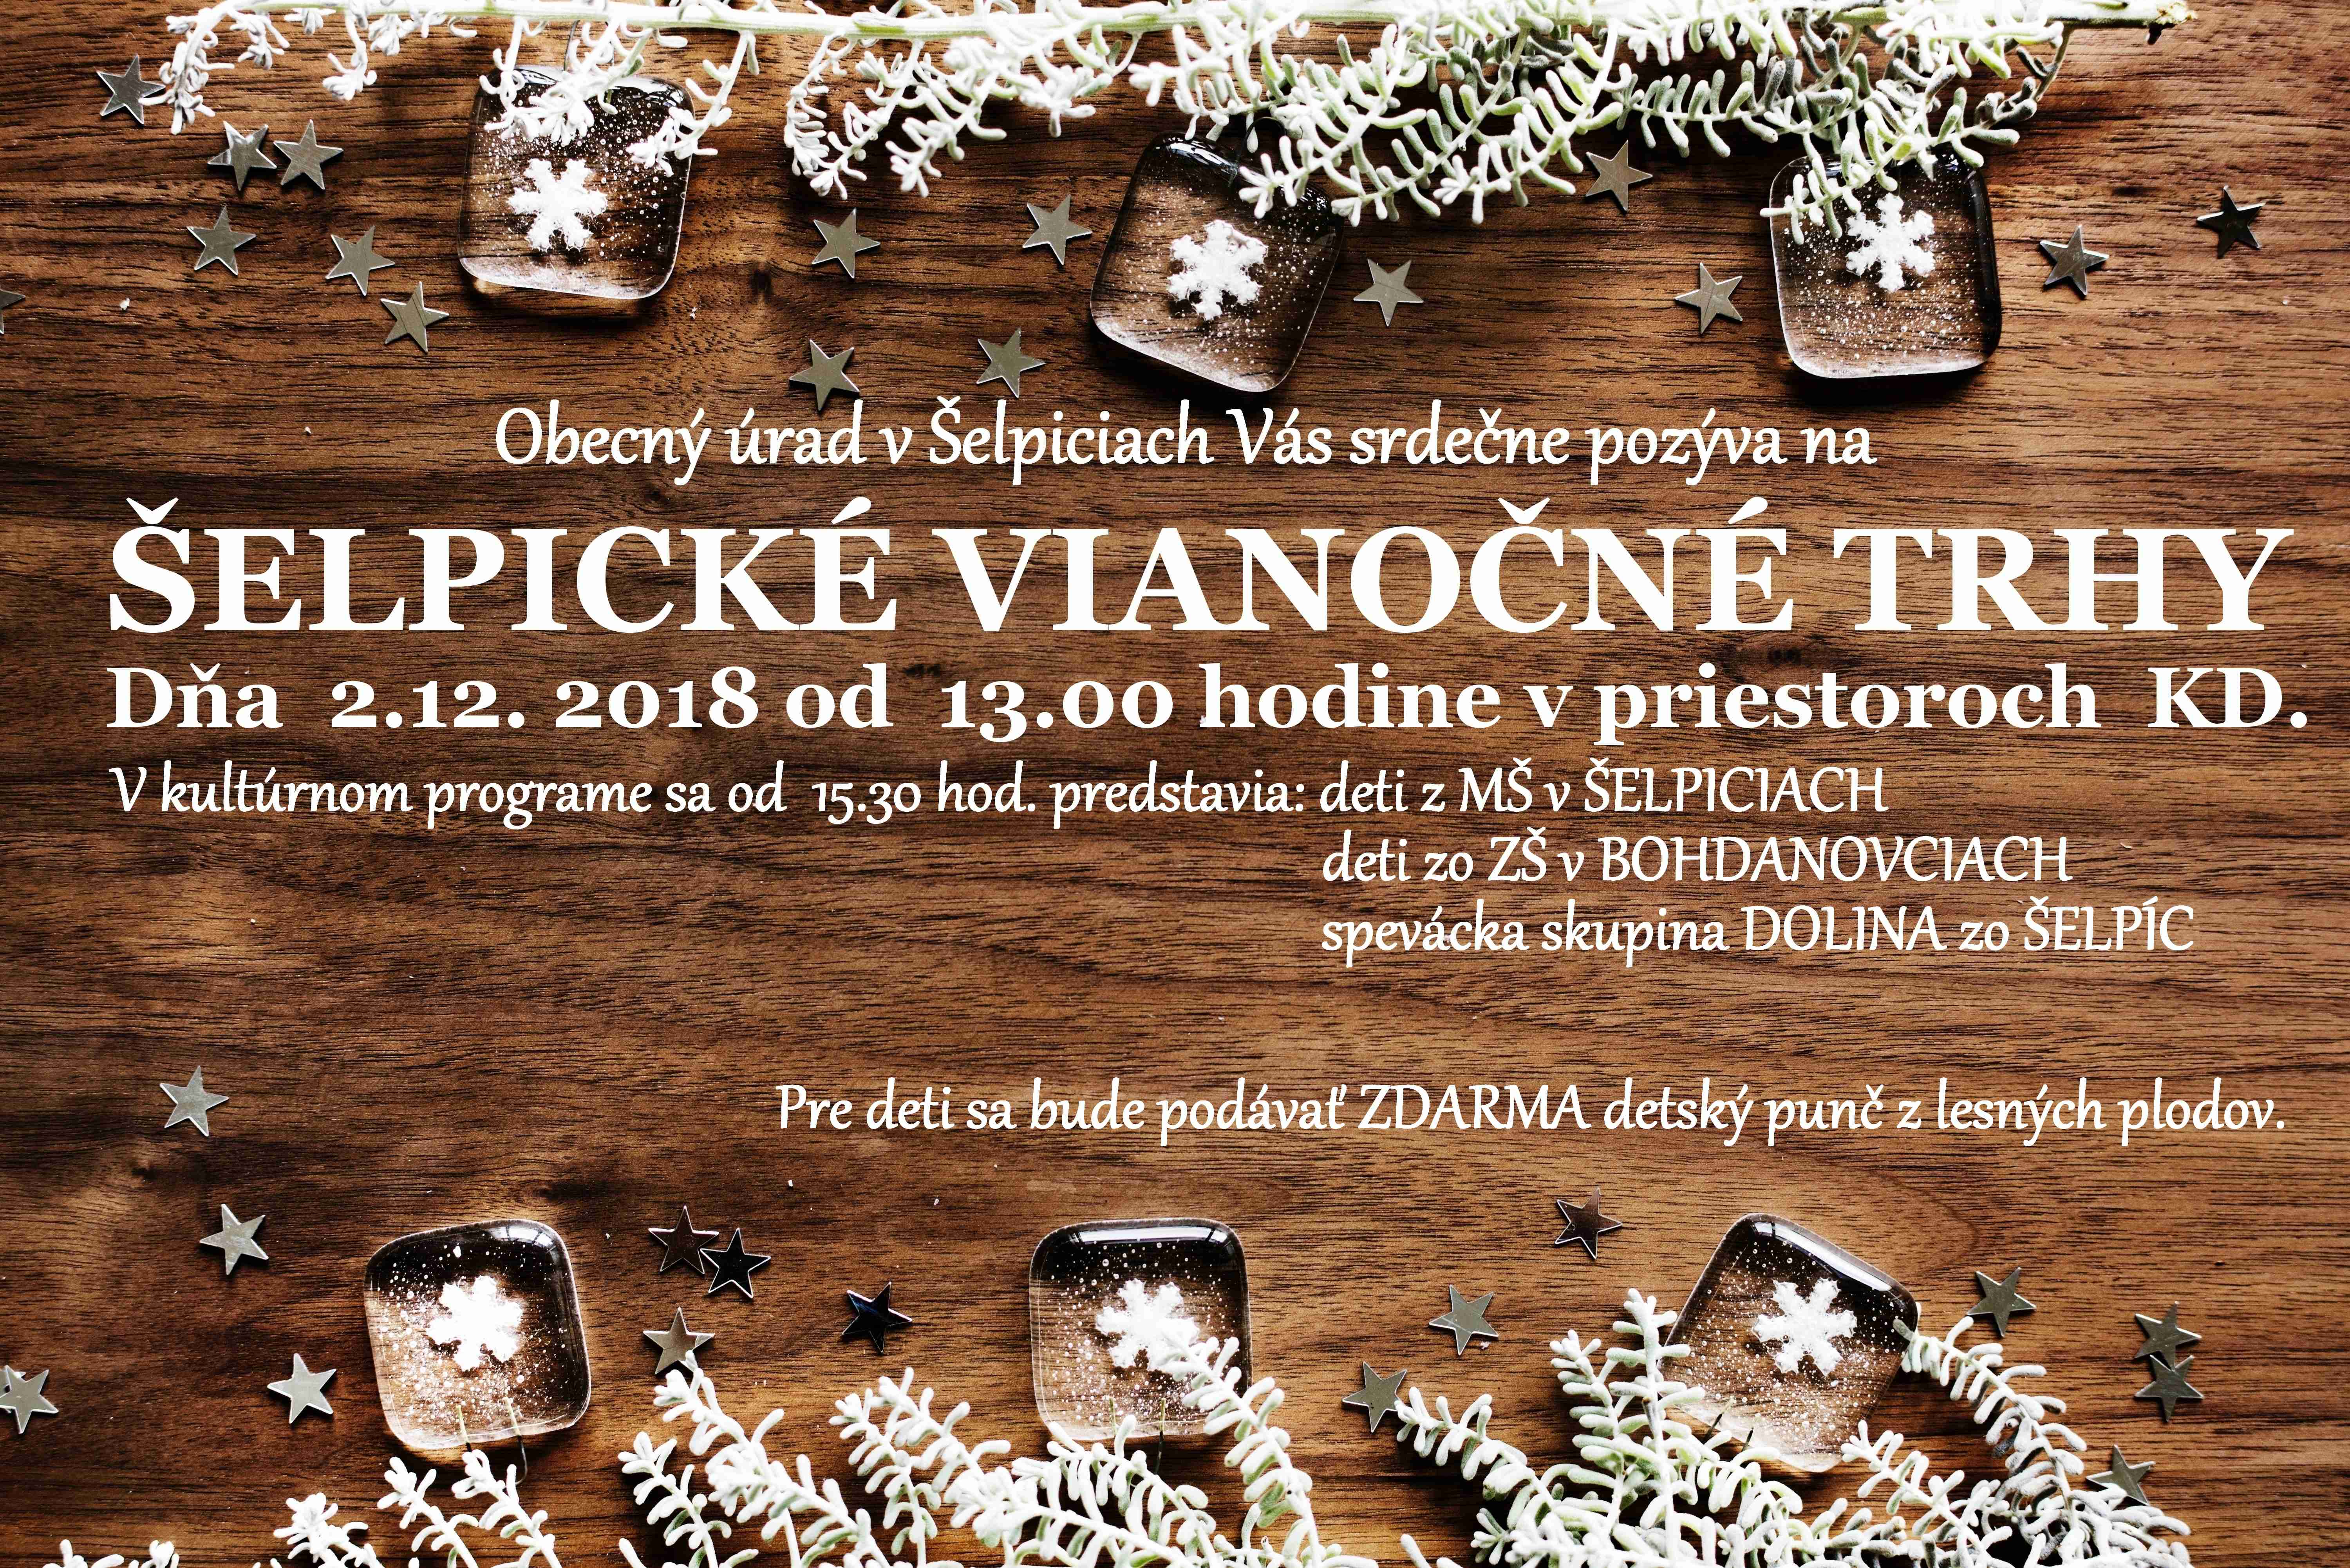 elpick vianon trhy 2018 elpice - 6.ronk